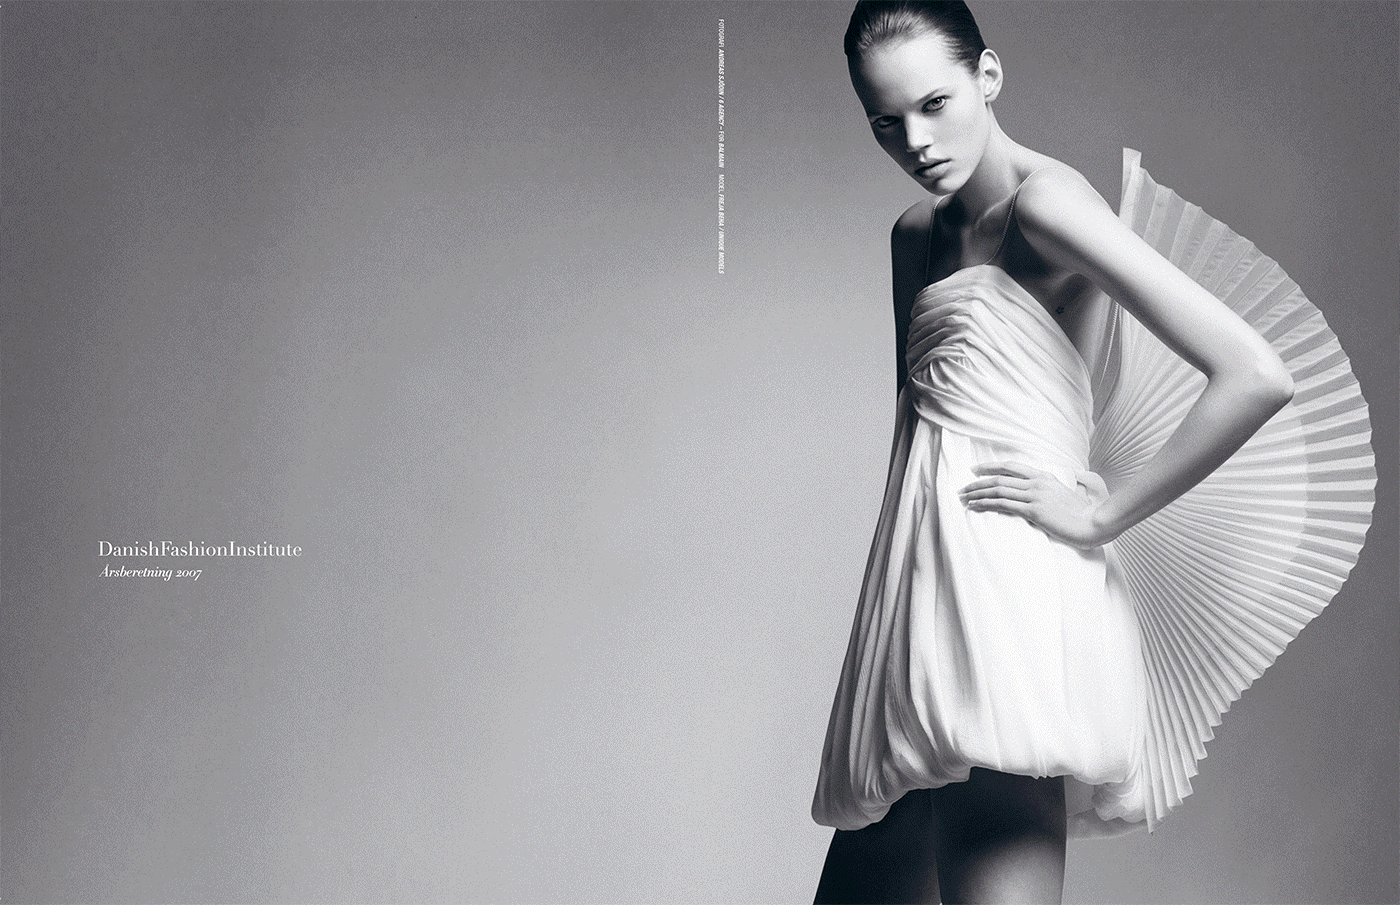 Danish Fashion Institute – Annual report 2007 spreads